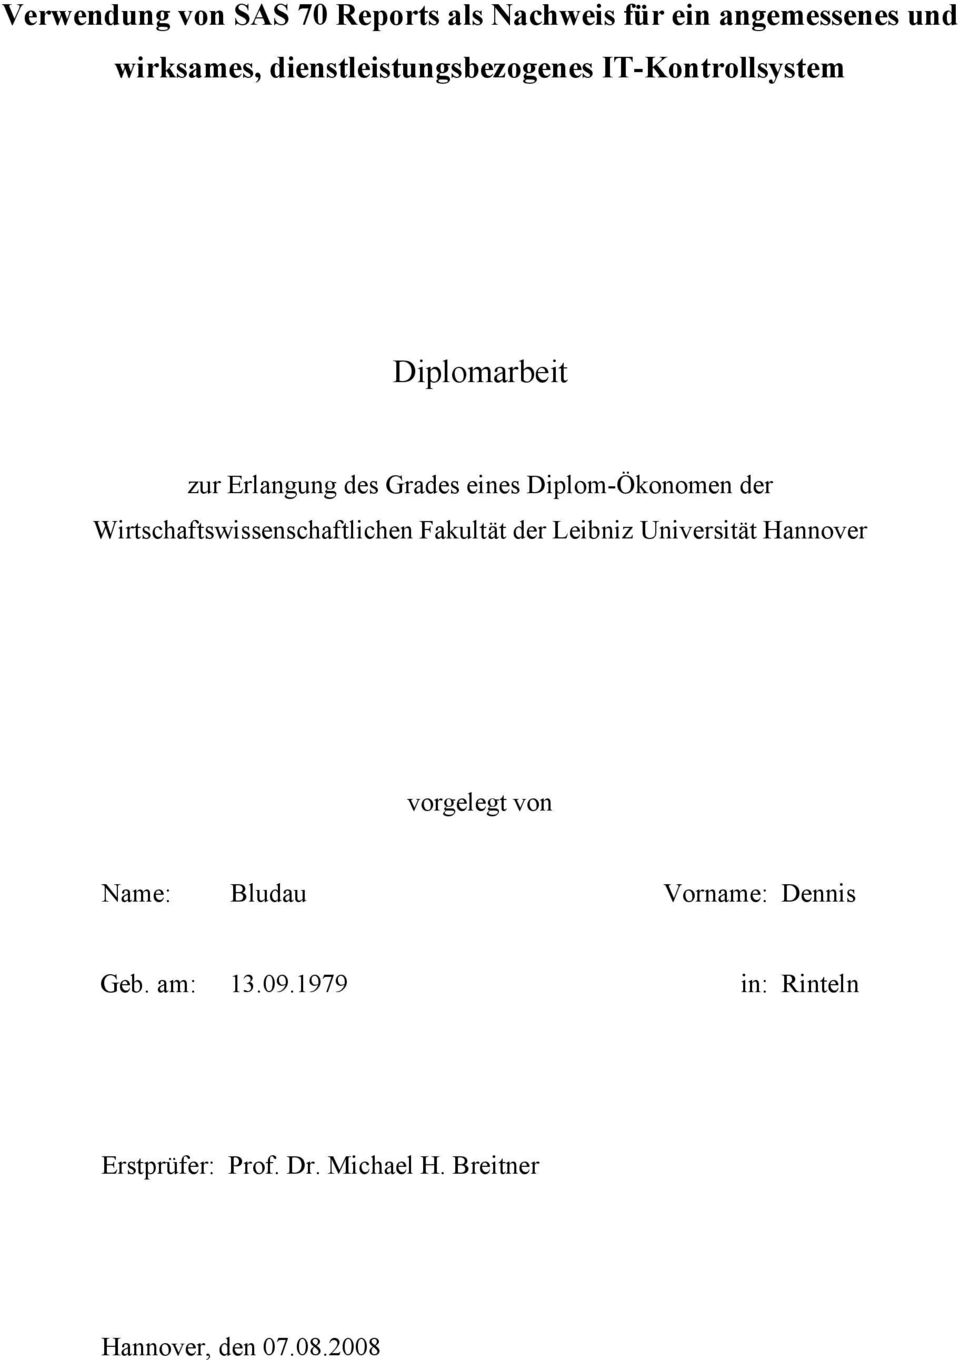 Diplom-Ökonomen der Wirtschaftswissenschaftlichen Fakultät der Leibniz Universität Hannover